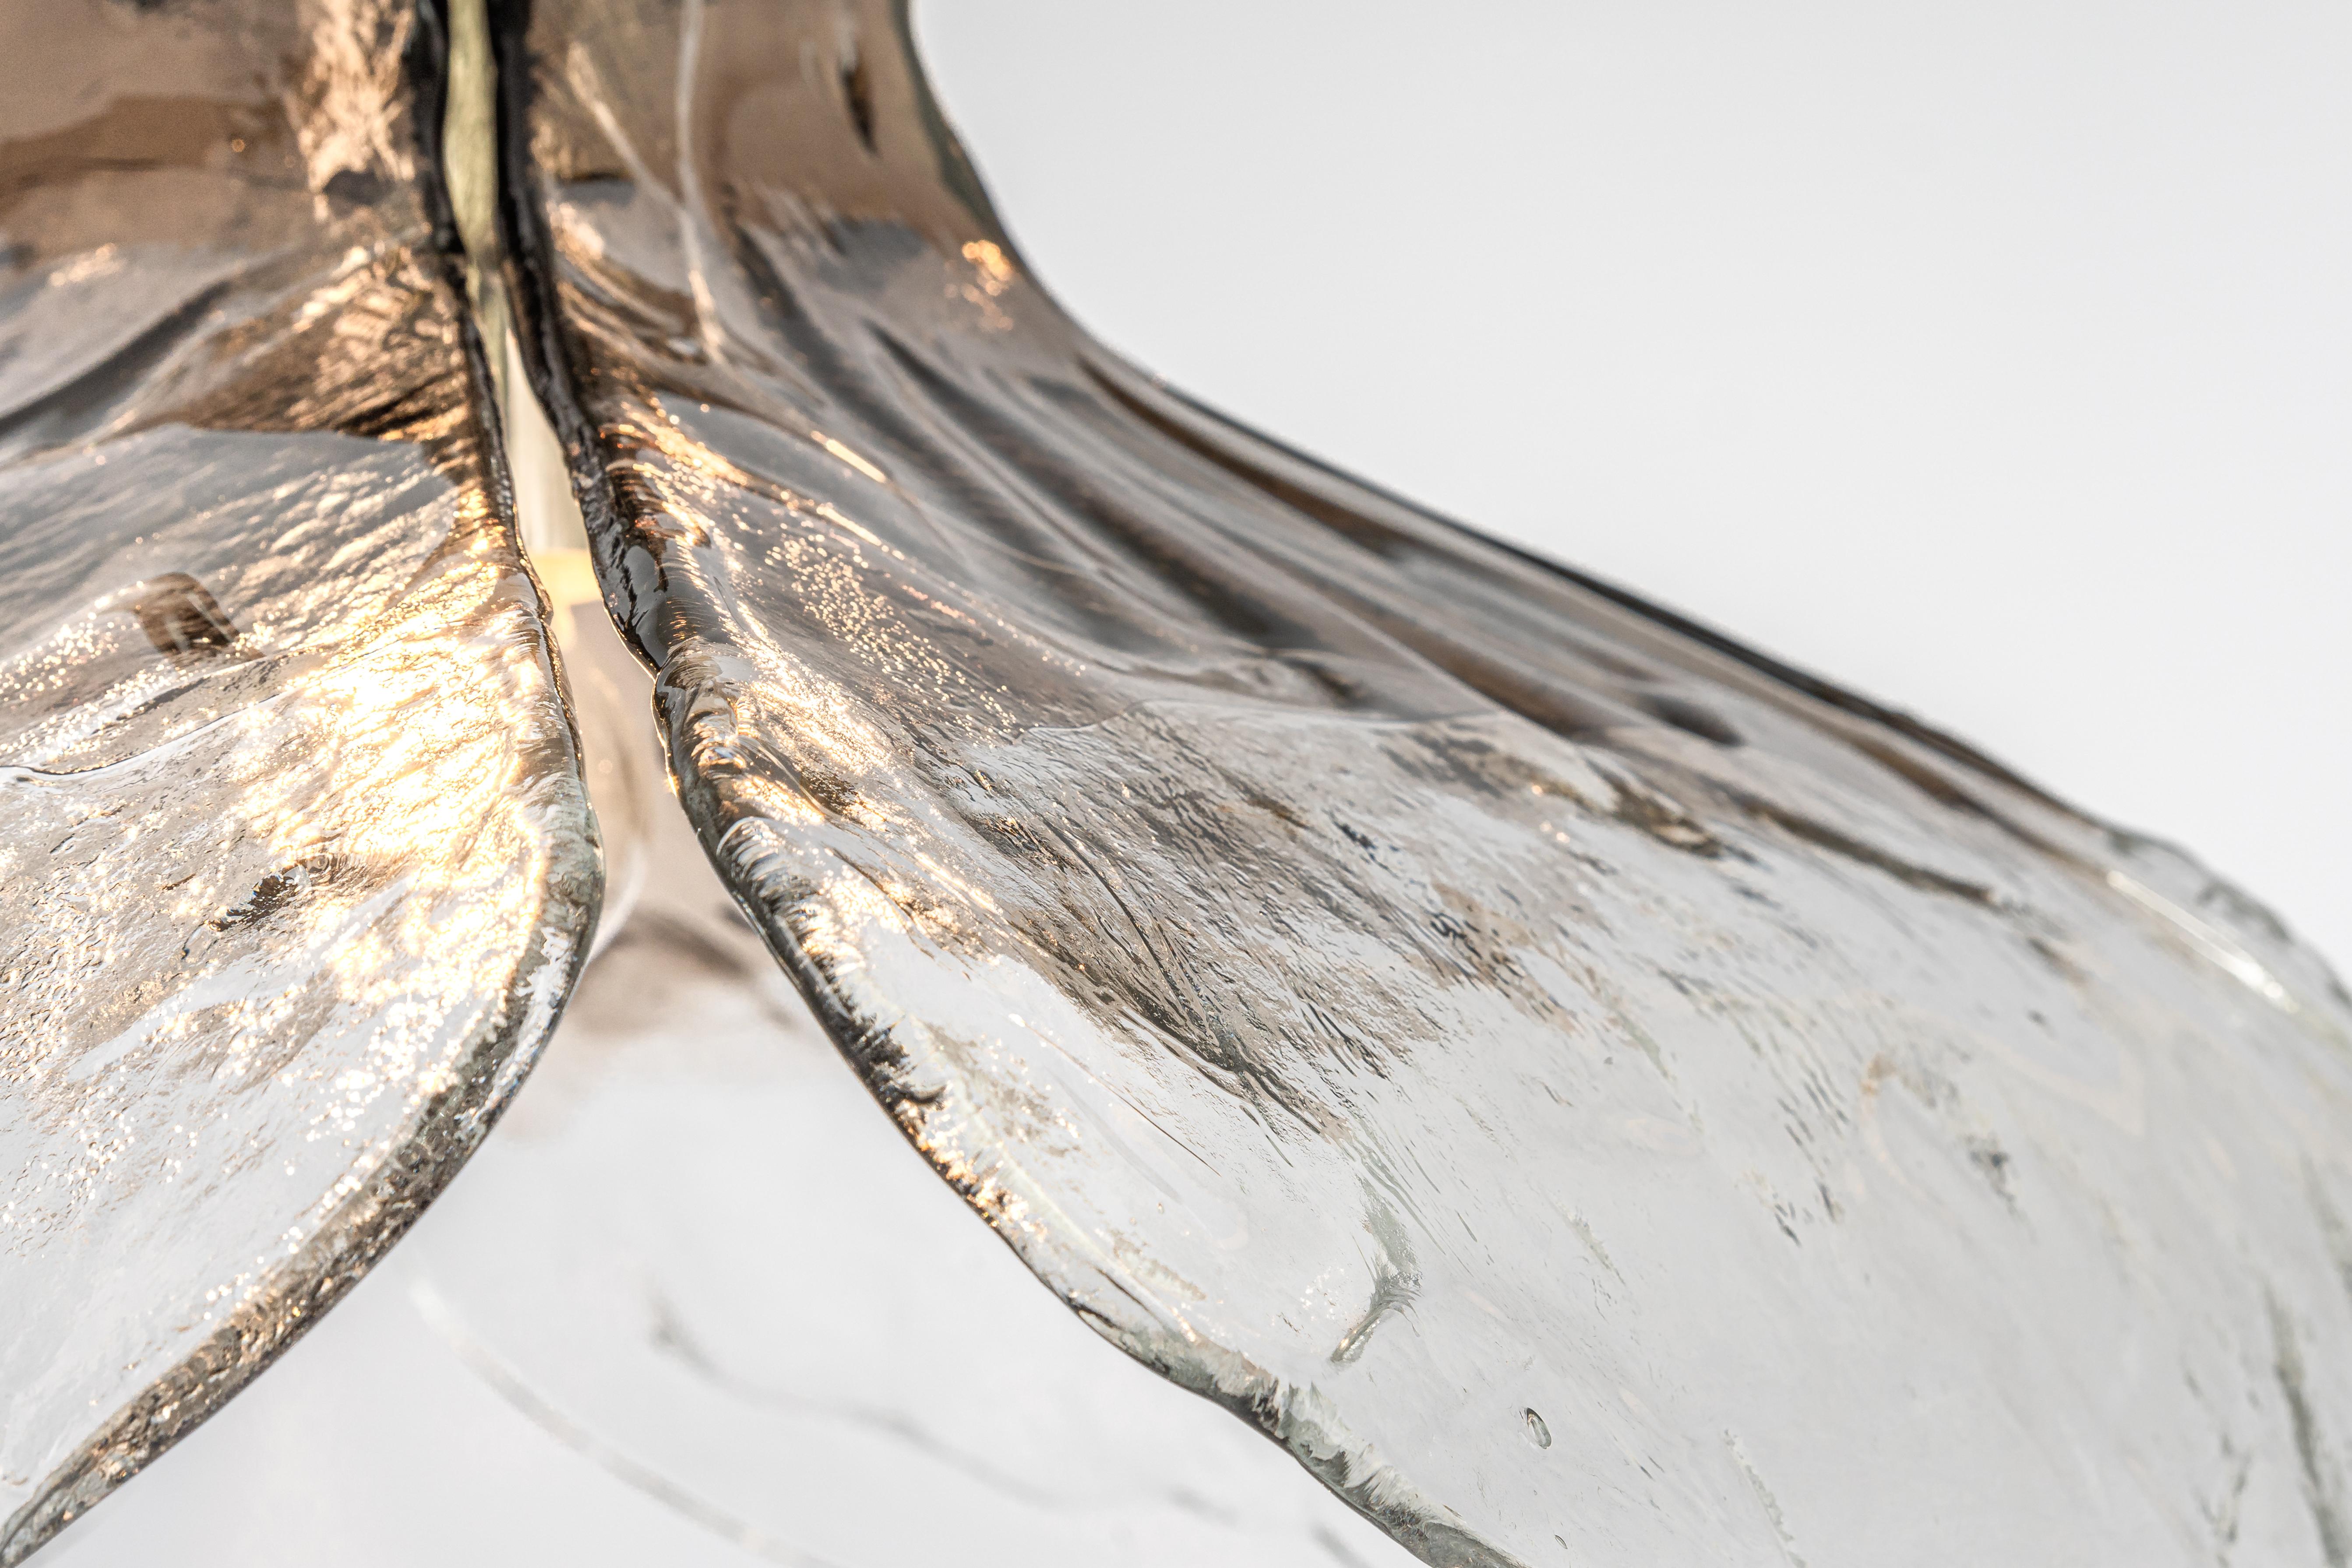 Un grand lustre en verre fumé de Murano conçu par Carlo Nason pour Kalmar, en Allemagne, fabriqué dans les années 1960.
Le lustre est composé de 4 éléments épais en verre de Murano fixés à une structure métallique.

De haute qualité et en très bon